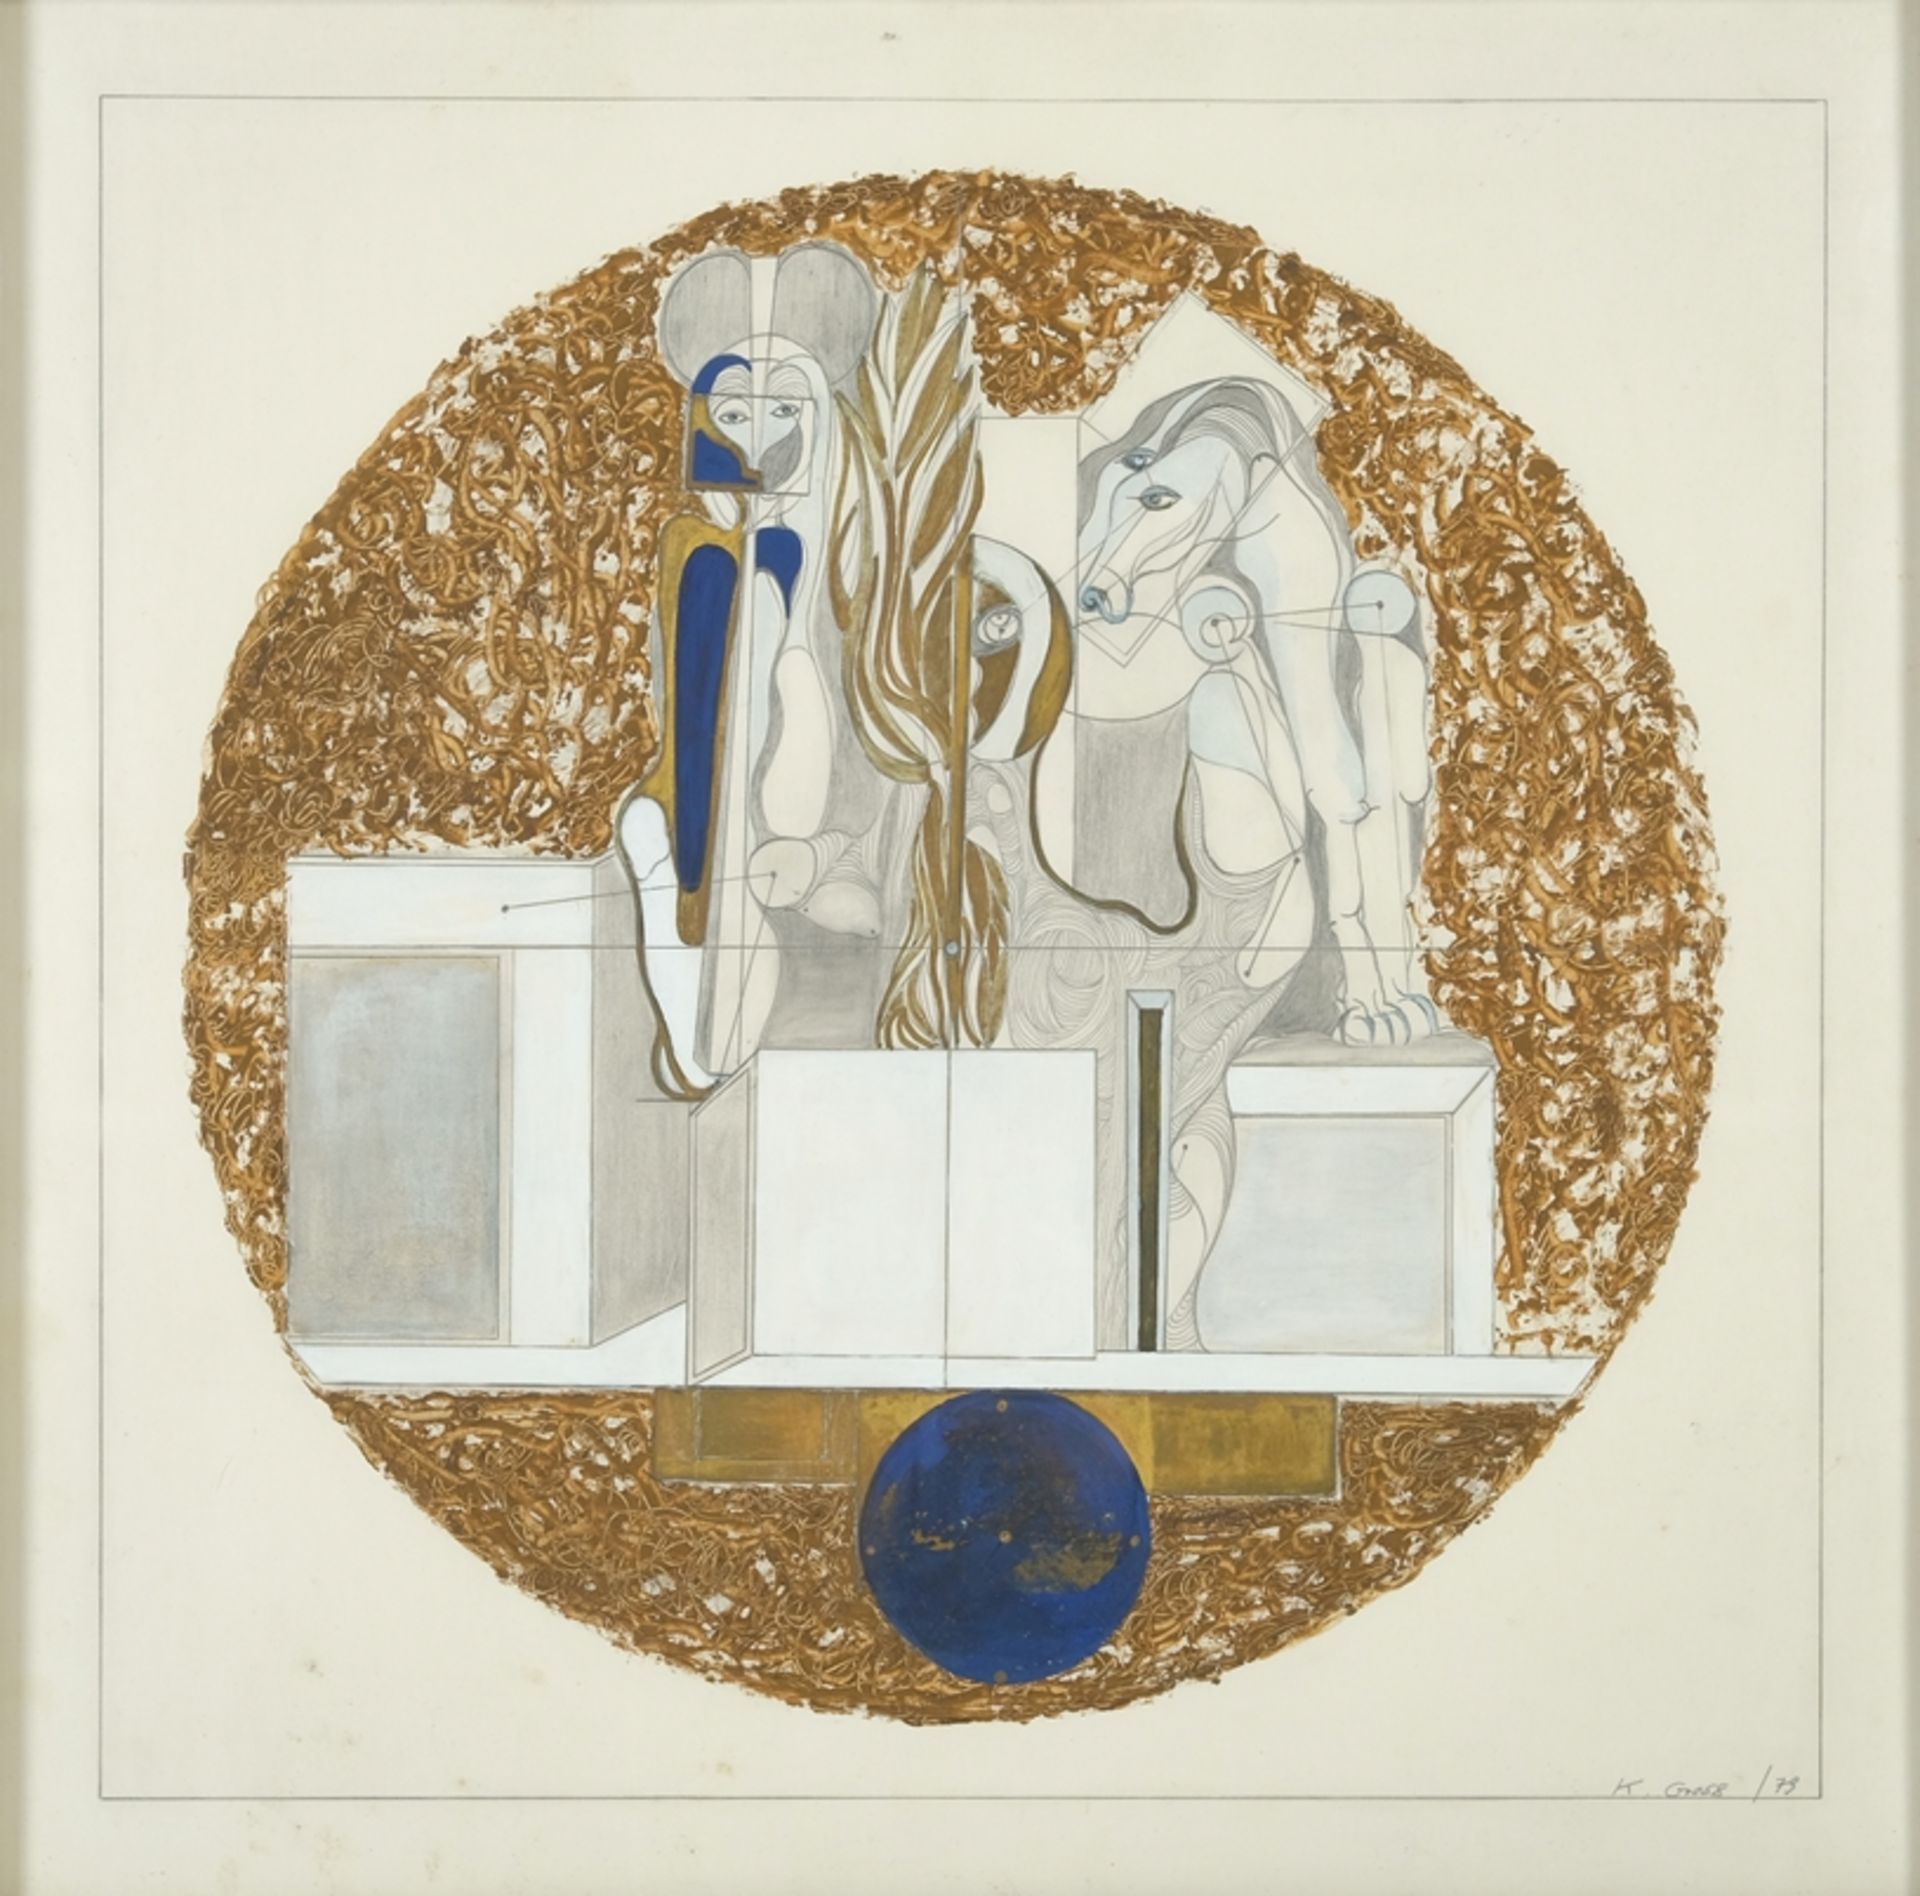 GROSS K., "Surrealistische und geometrische Zeichnung" von Mensch und Pferd, Weiß, Gold und Blau, s